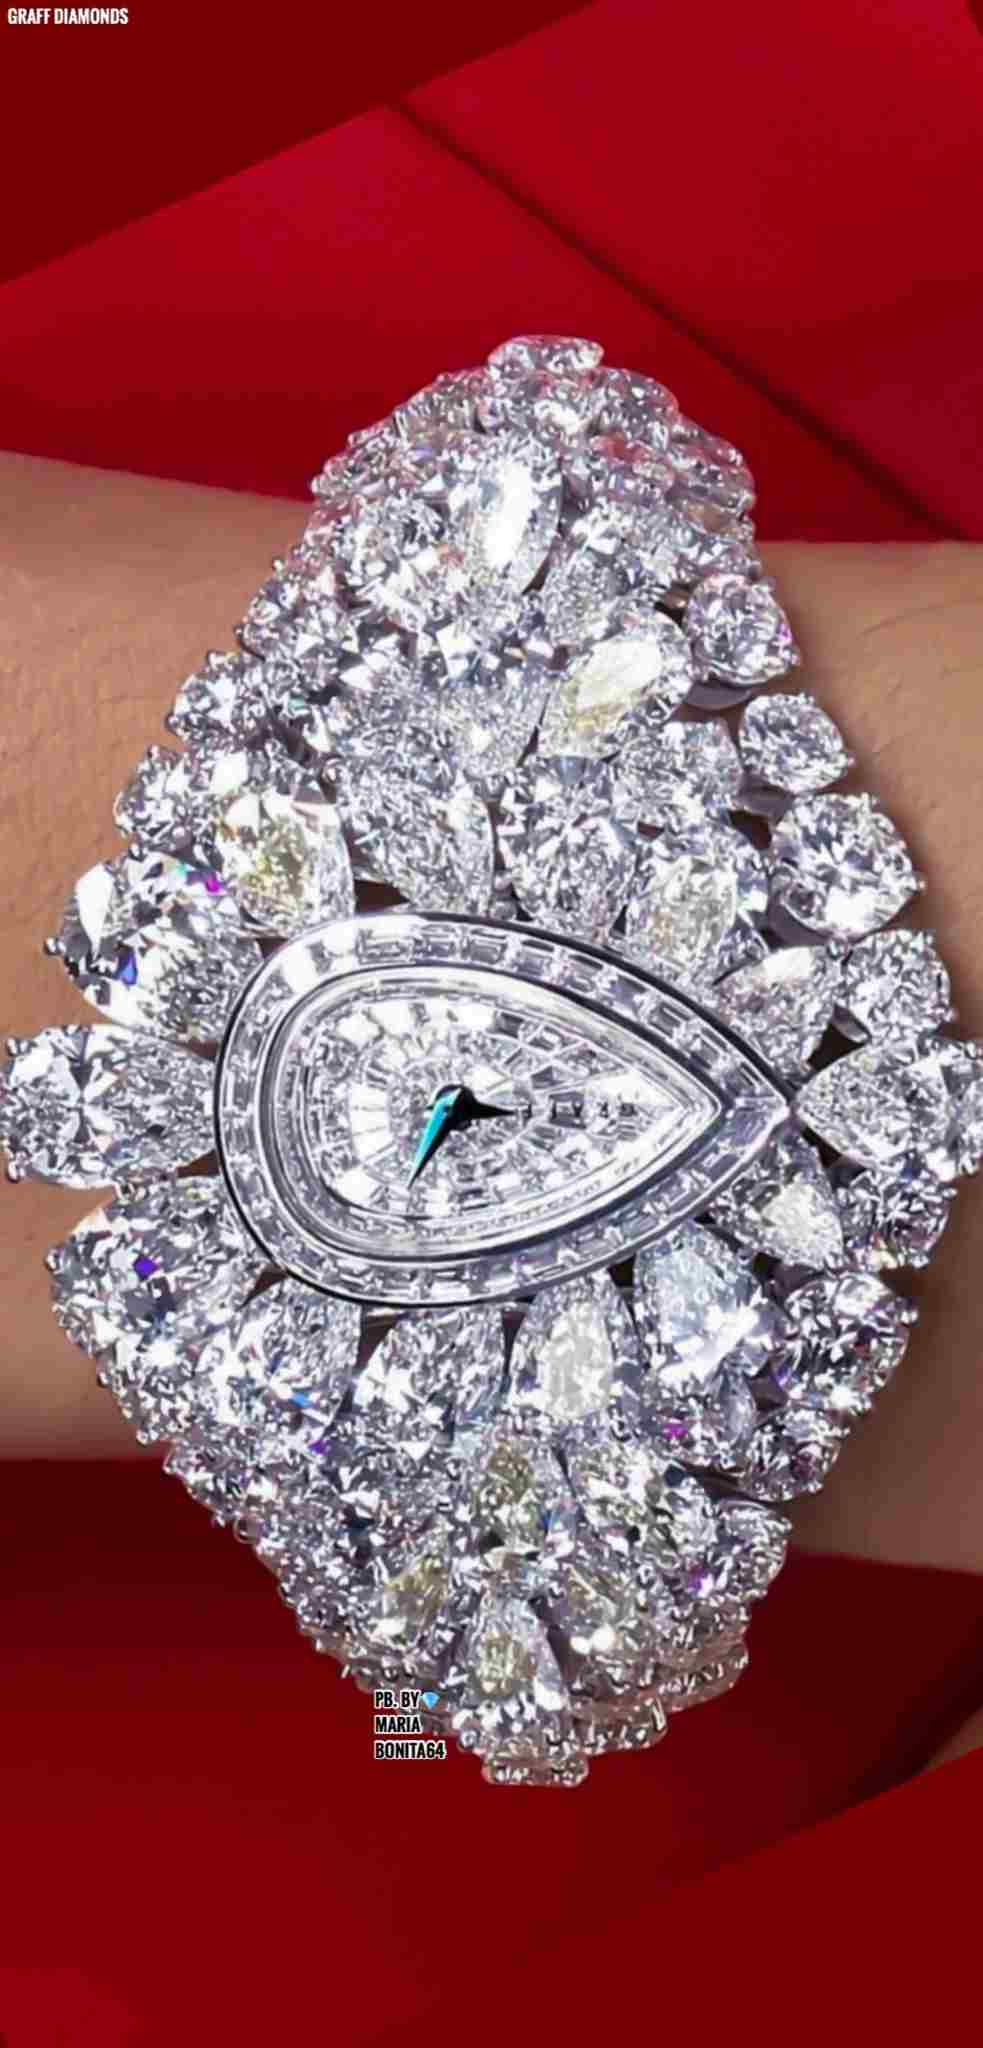 Bertabur Diamond, 10 Jam Tangan Termahal di Dunia